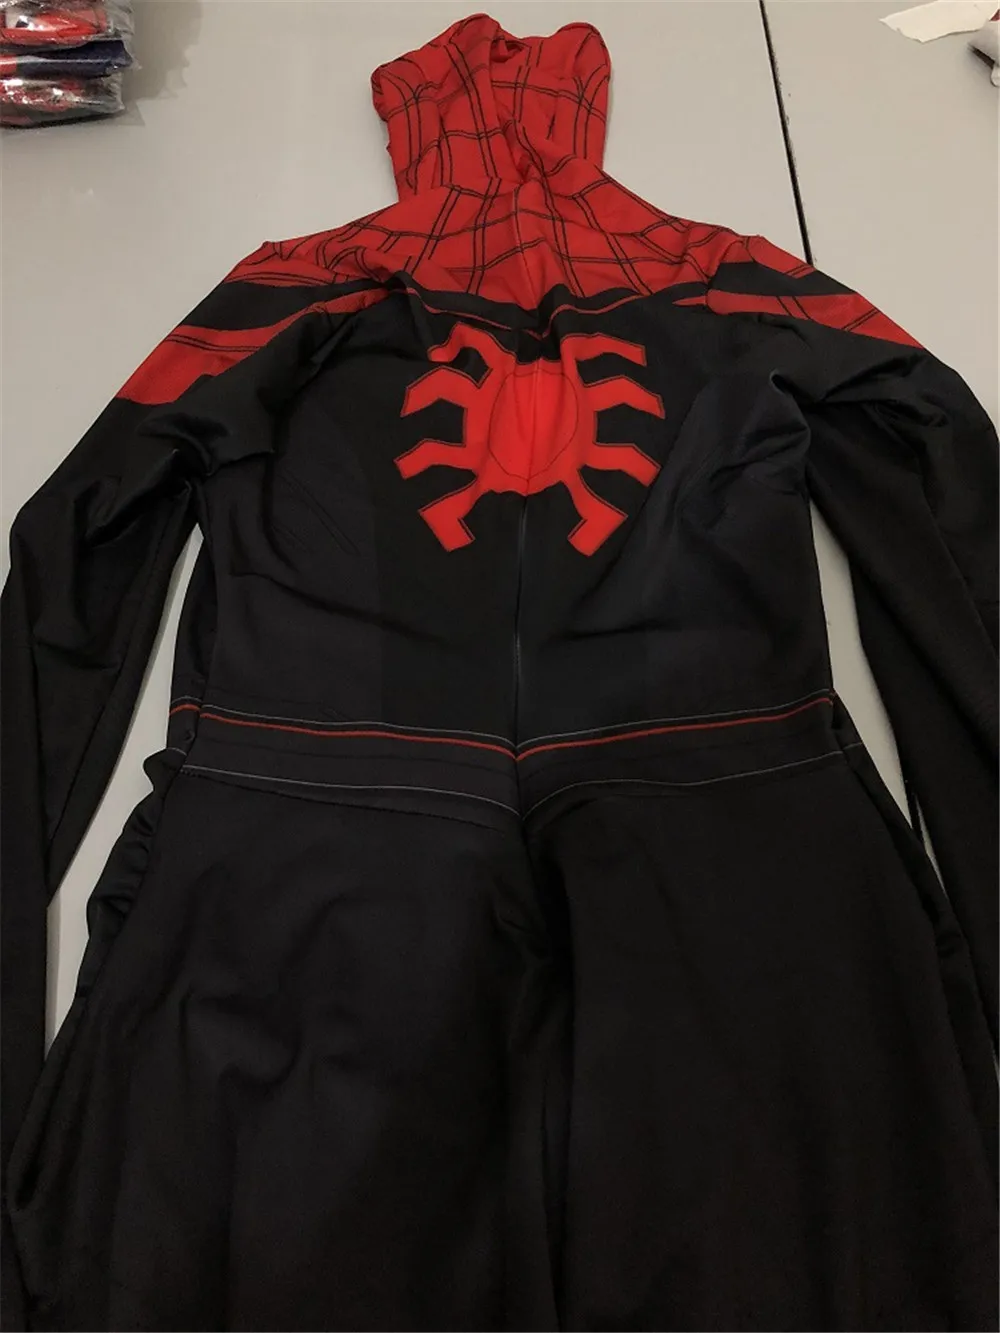 Железный Человек-паук, домашний костюм для косплея, Zentai, Железный Человек-паук, герой, боди, костюм, комбинезоны, костюм на Хэллоуин, Рождество